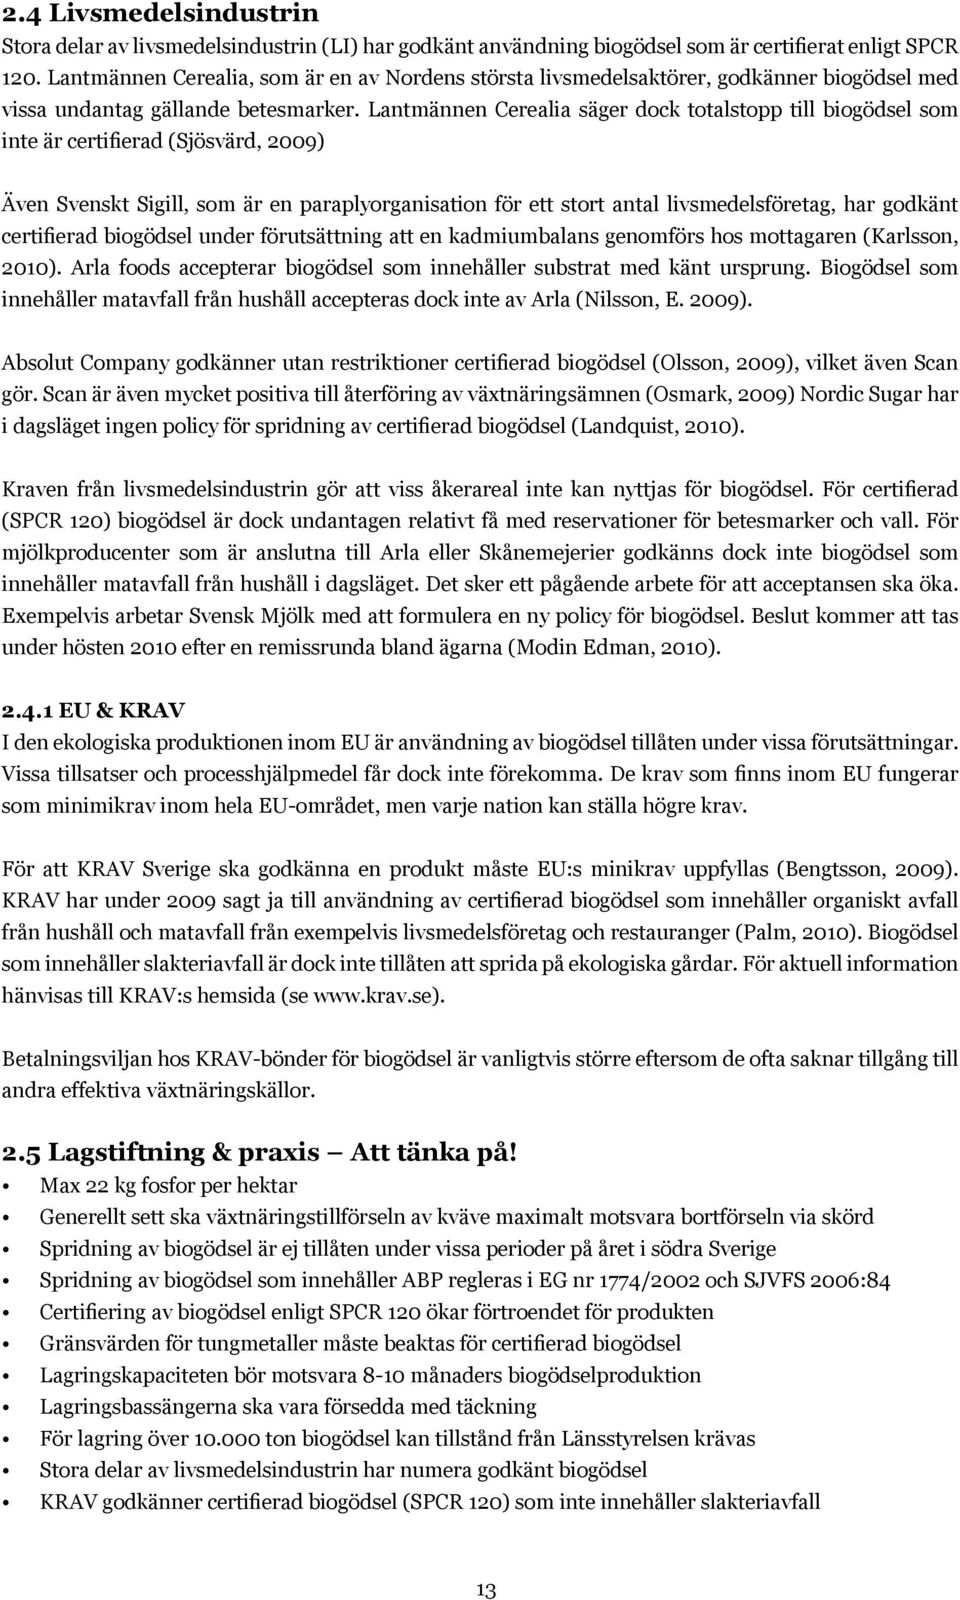 Lantmännen Cerealia säger dock totalstopp till biogödsel som inte är certifierad (Sjösvärd, 2009) Även Svenskt Sigill, som är en paraplyorganisation för ett stort antal livsmedelsföretag, har godkänt